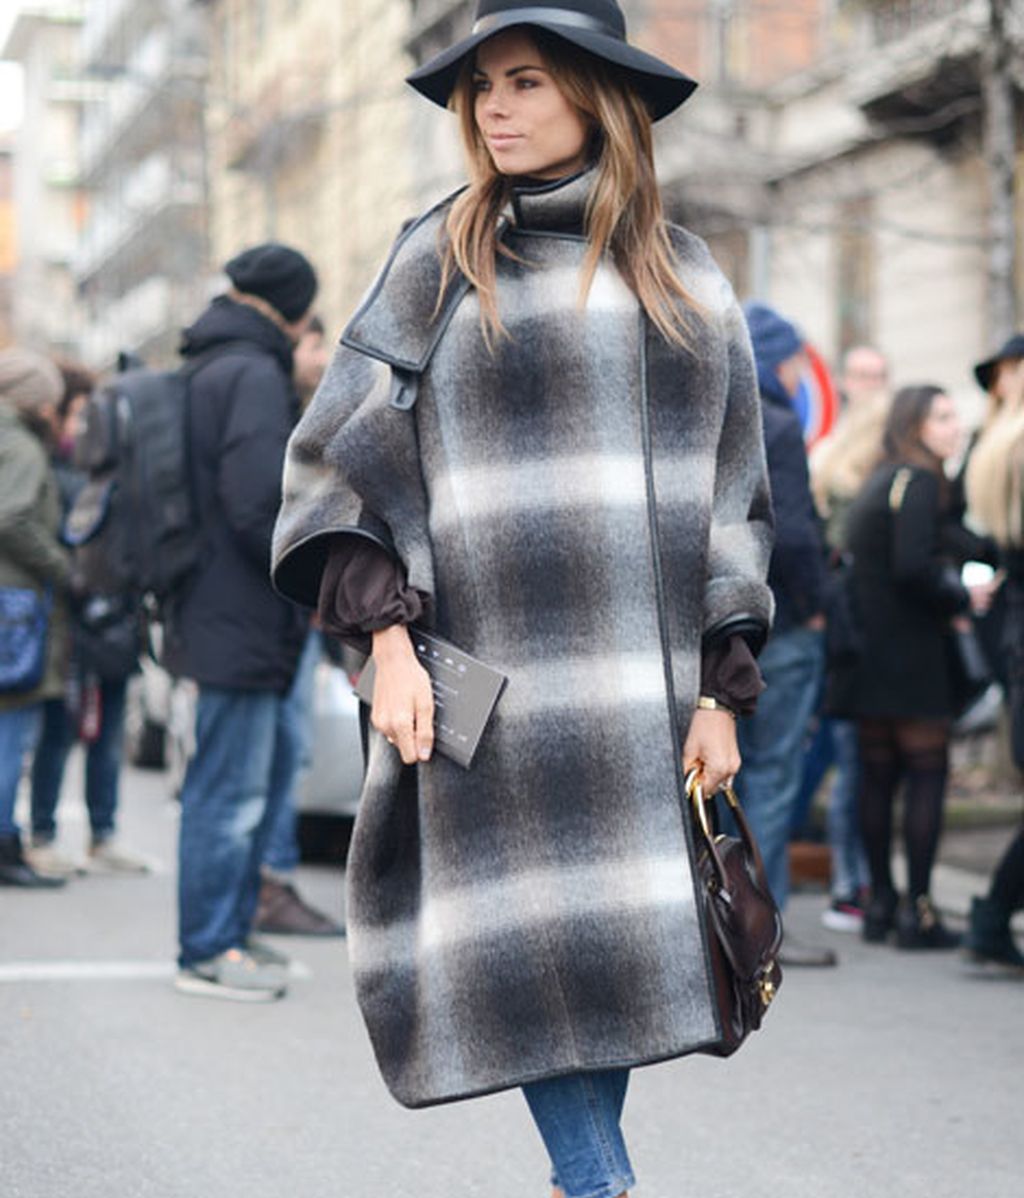 Las semanas de la moda tienen otra pasarela: el top 'street style'